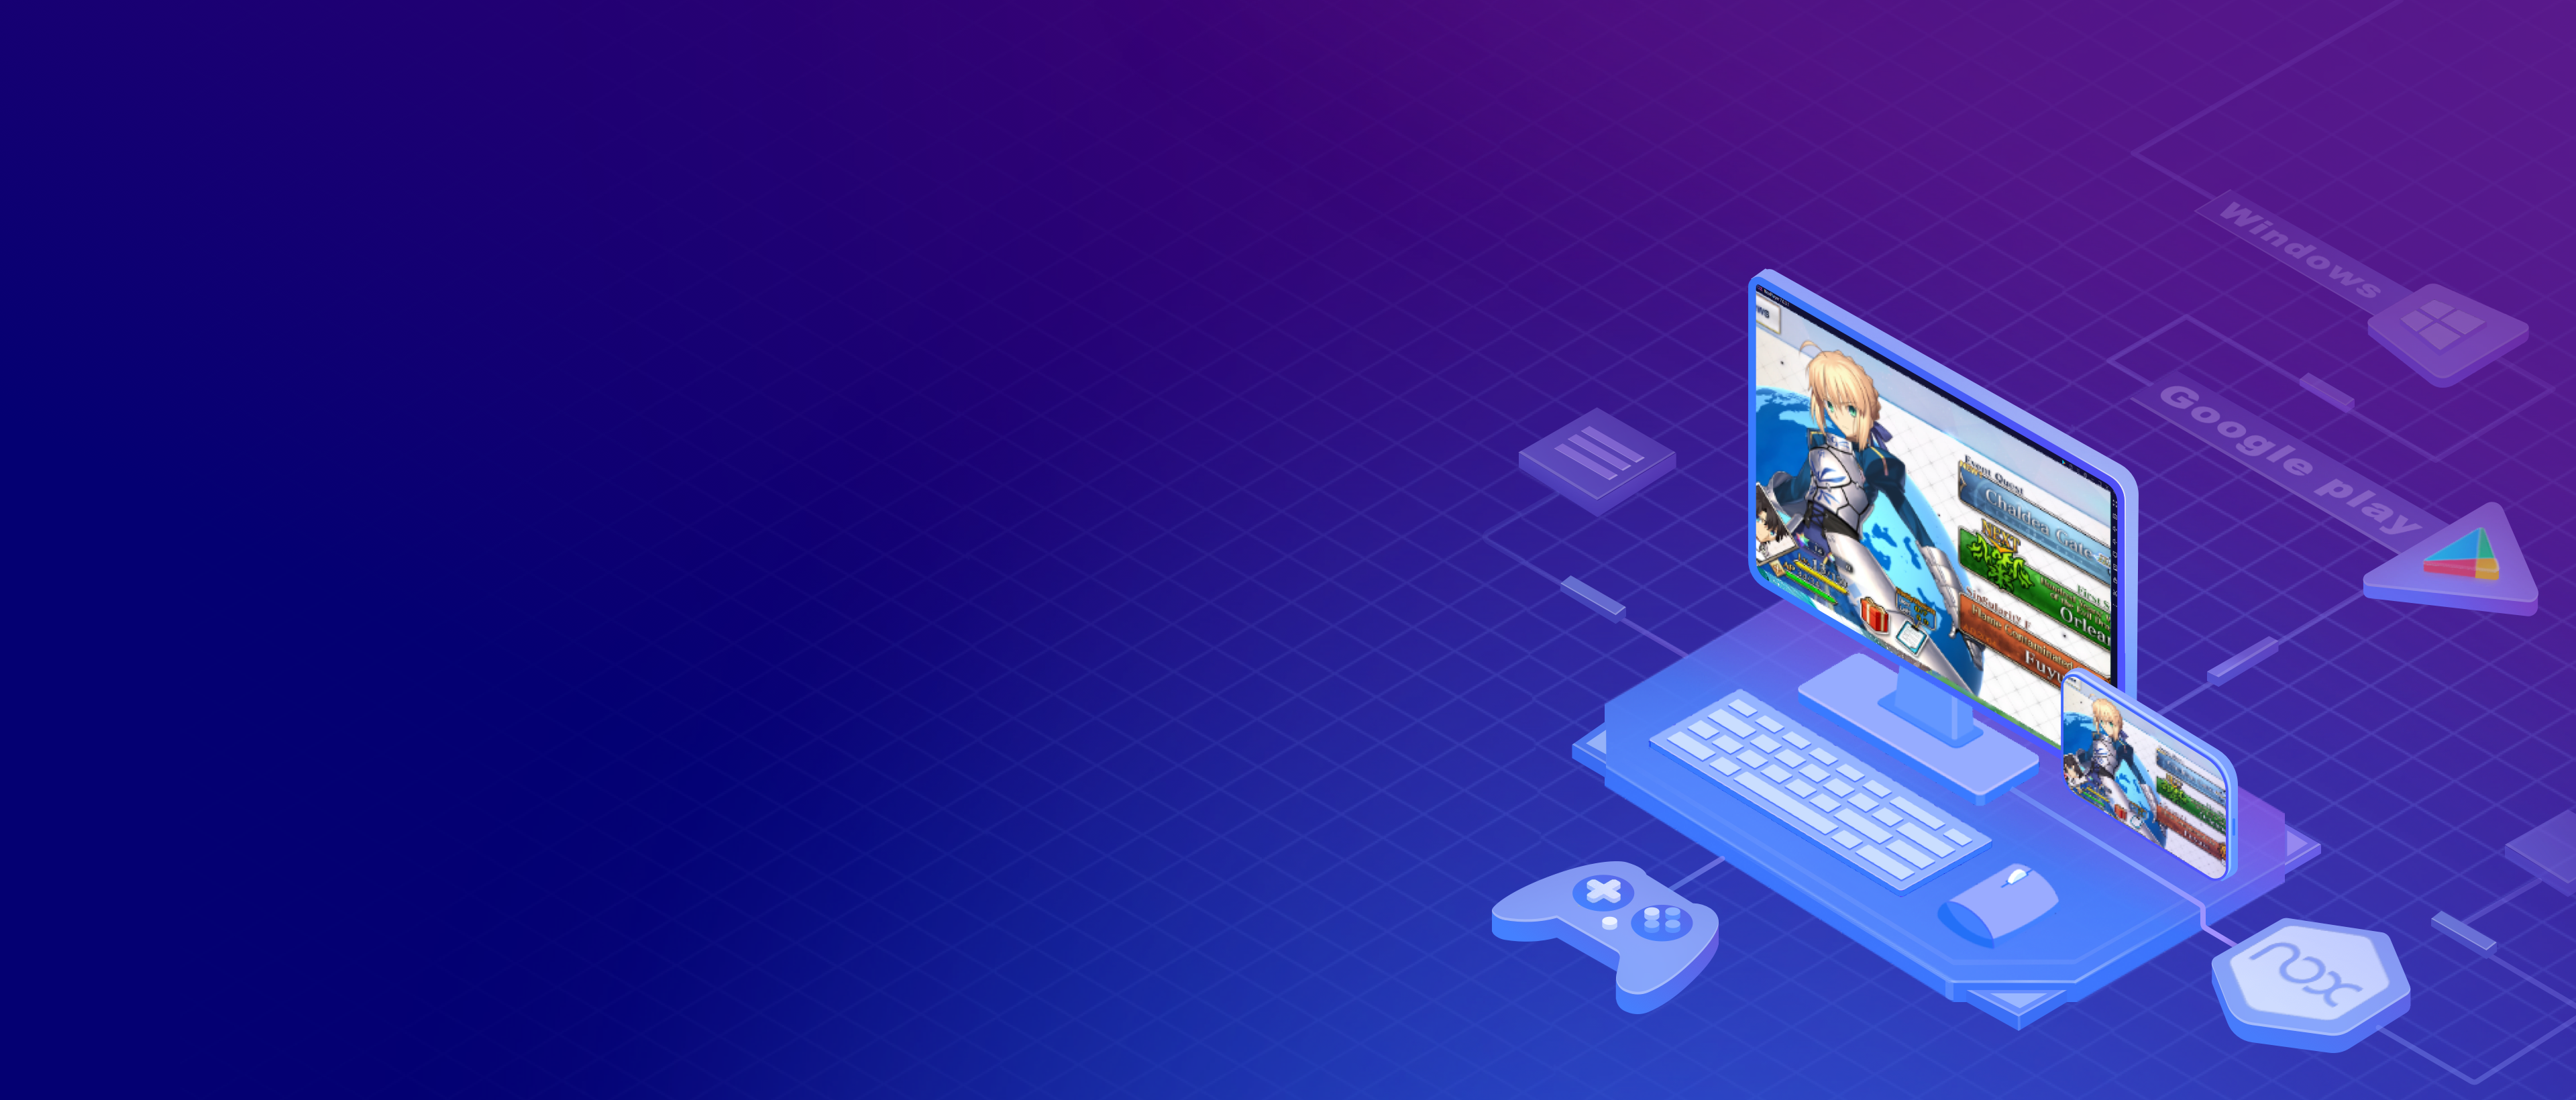 제갈량 키우기 : 삼국지 방치형 RPG PC 버전, 컴퓨터에서 설치하고 안전하게 즐기자 - 녹스 앱플레이어